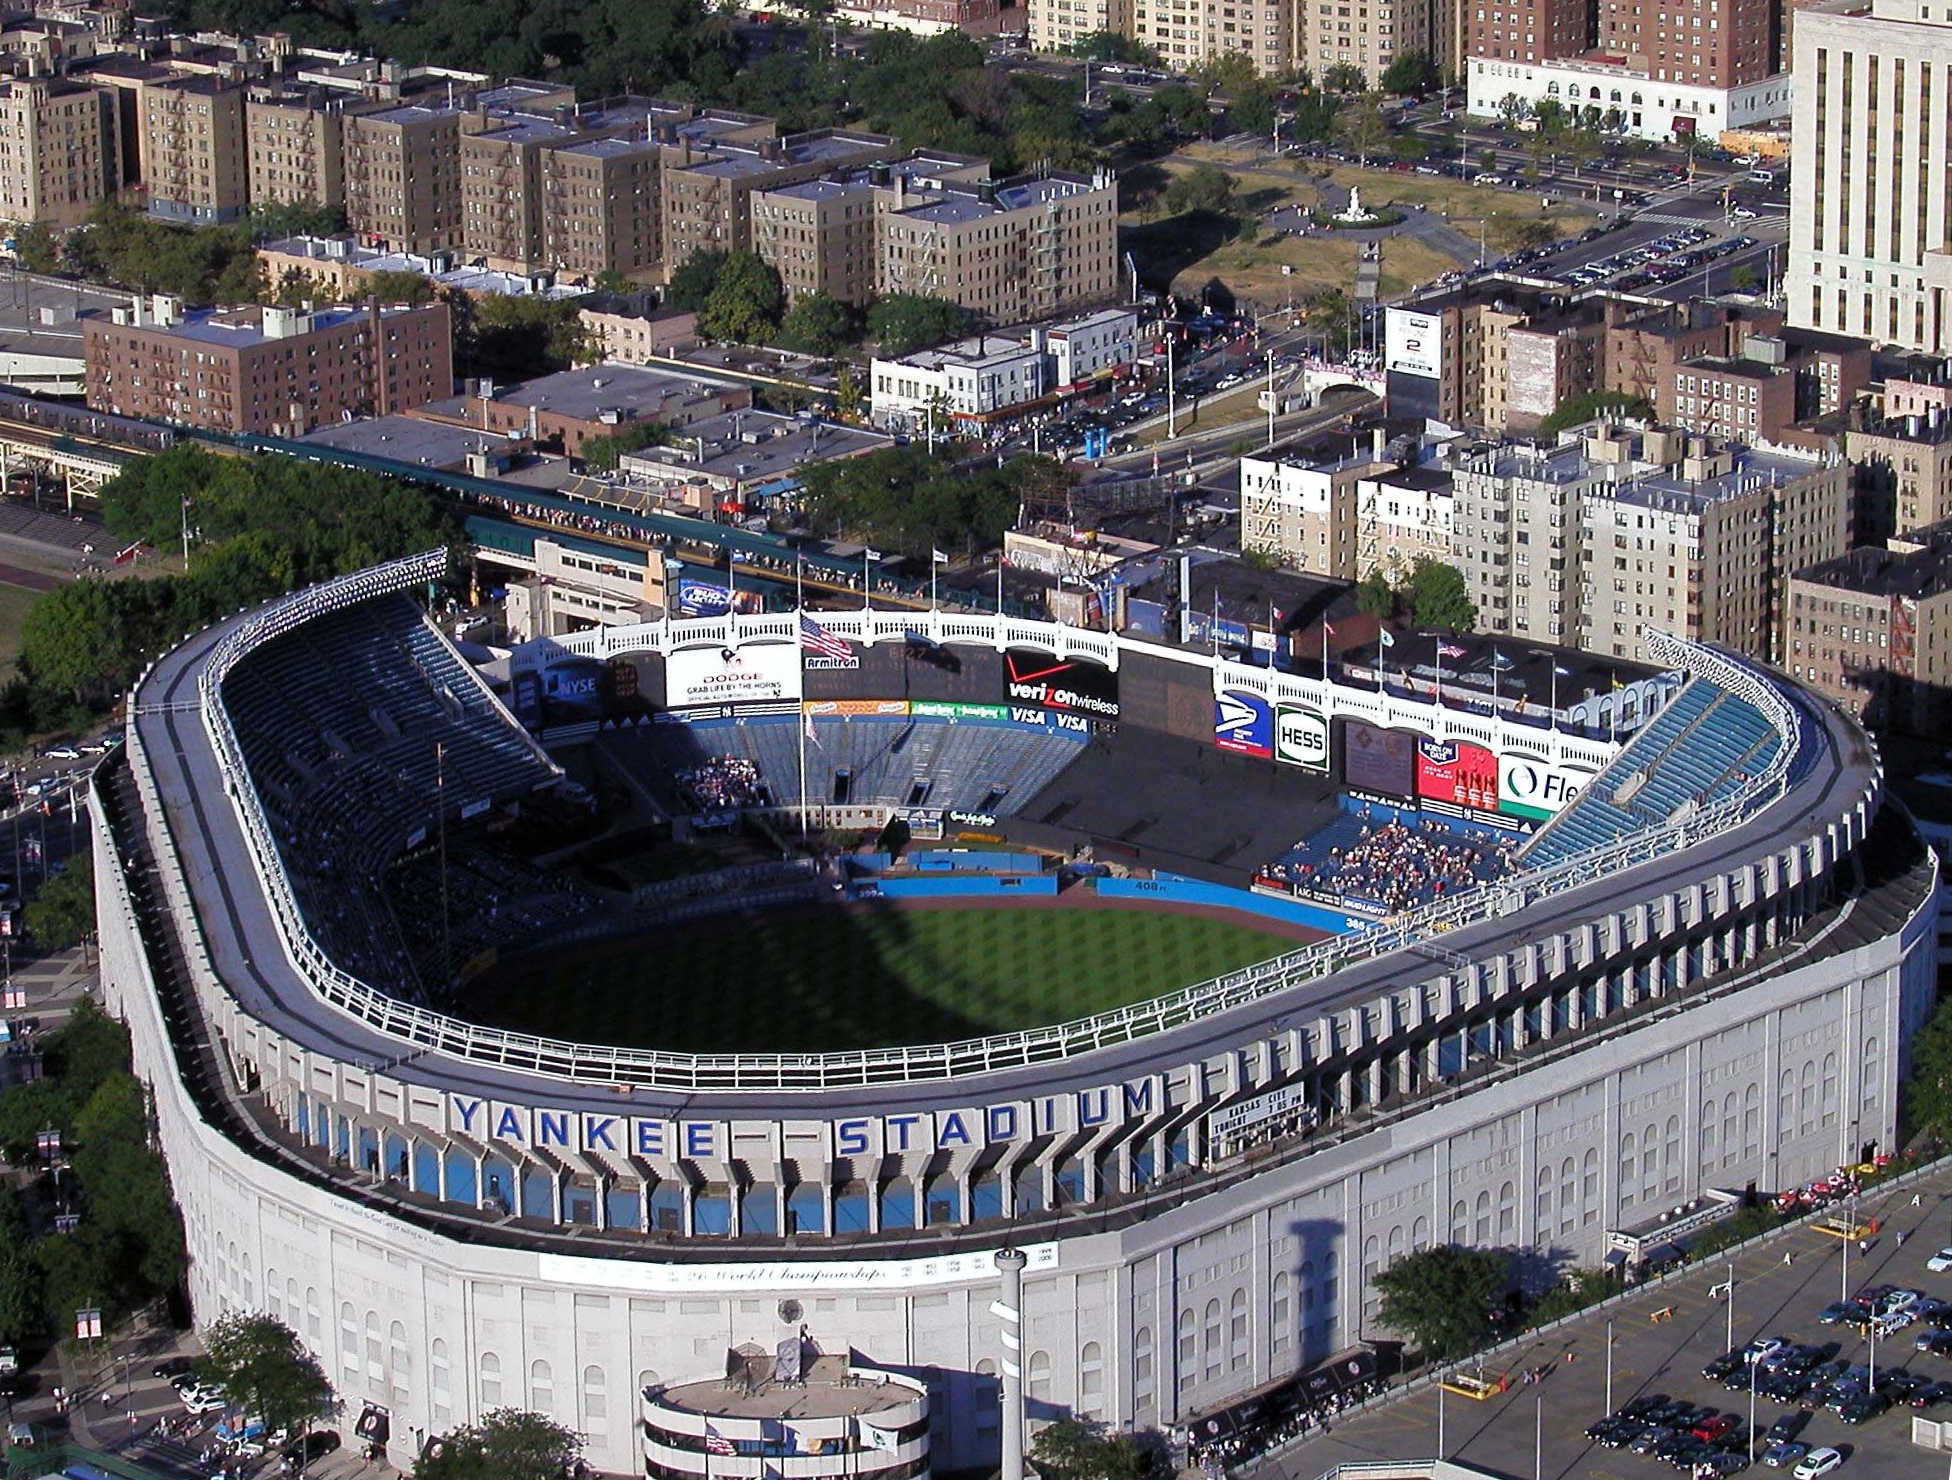 Yankee Stadium in the Bronx